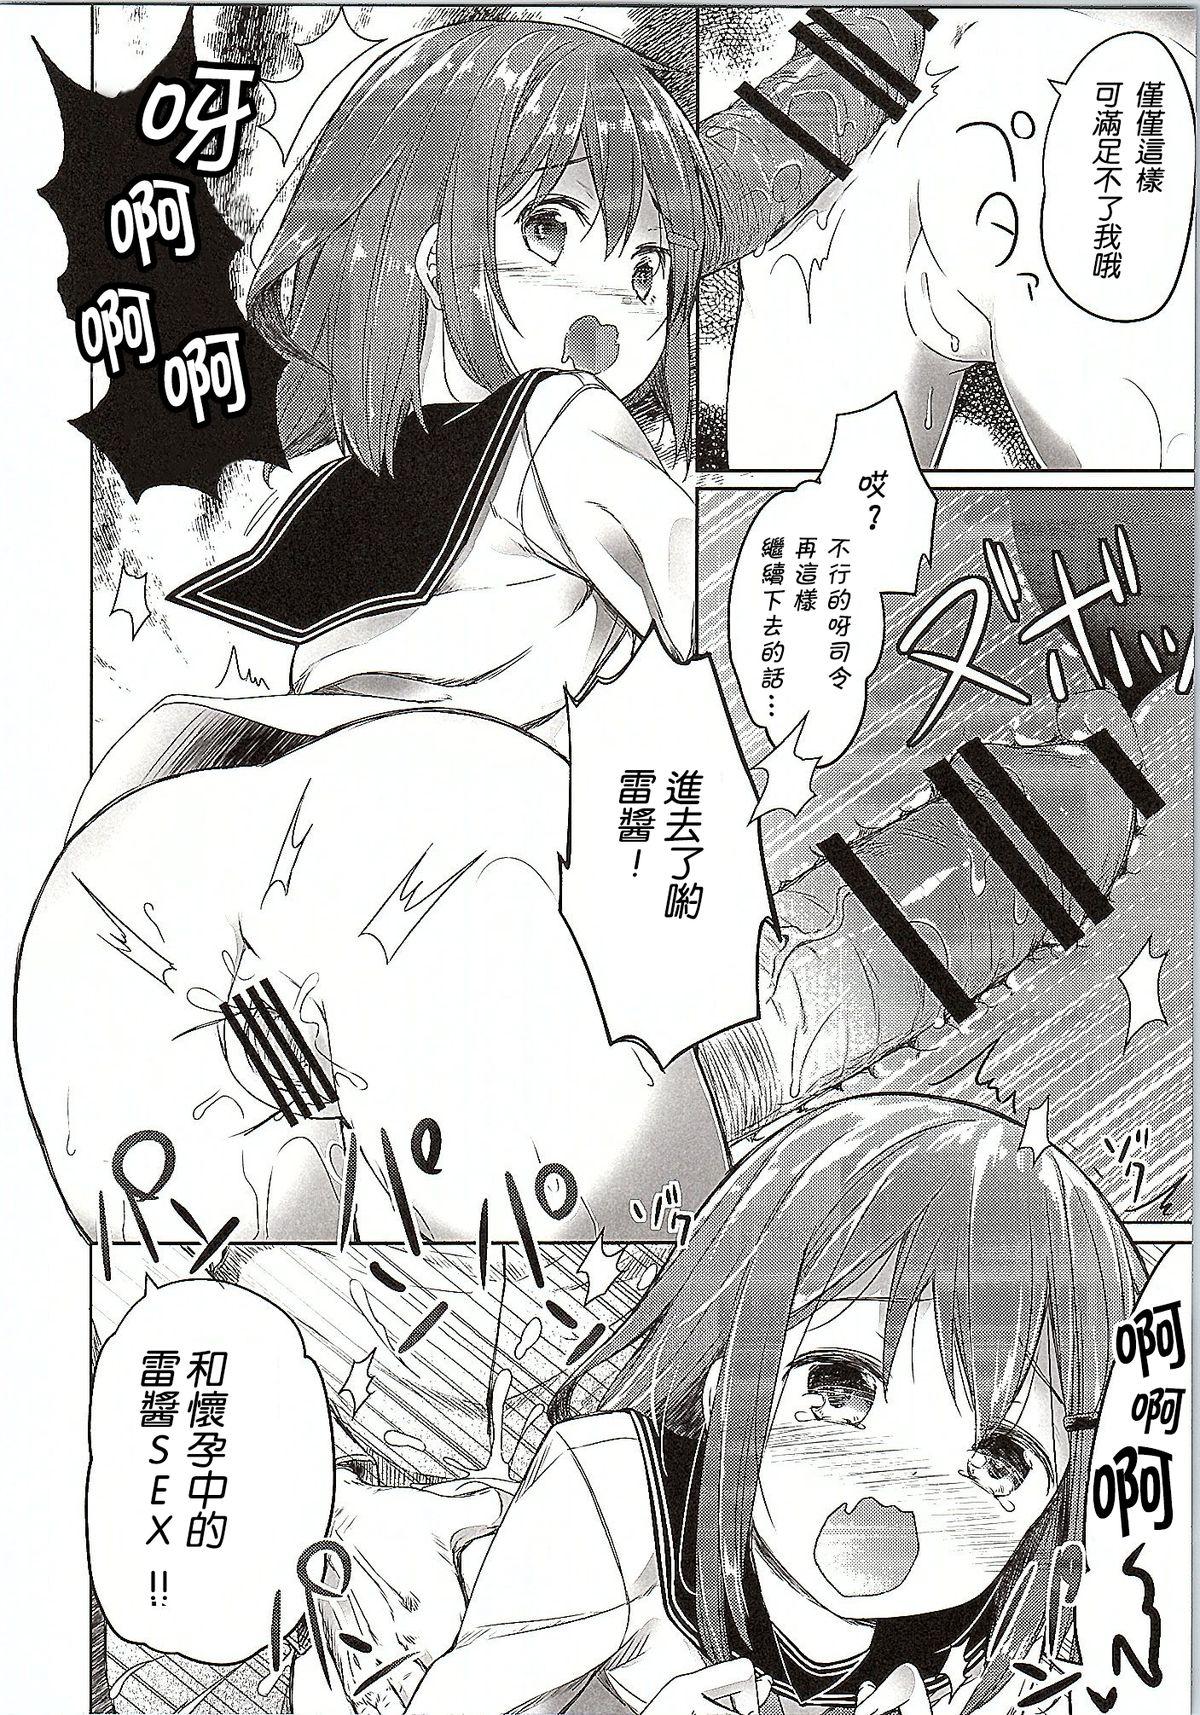 Mulher Totsugiko!!! Ikazuchi-chan - Kantai collection Porno - Page 6